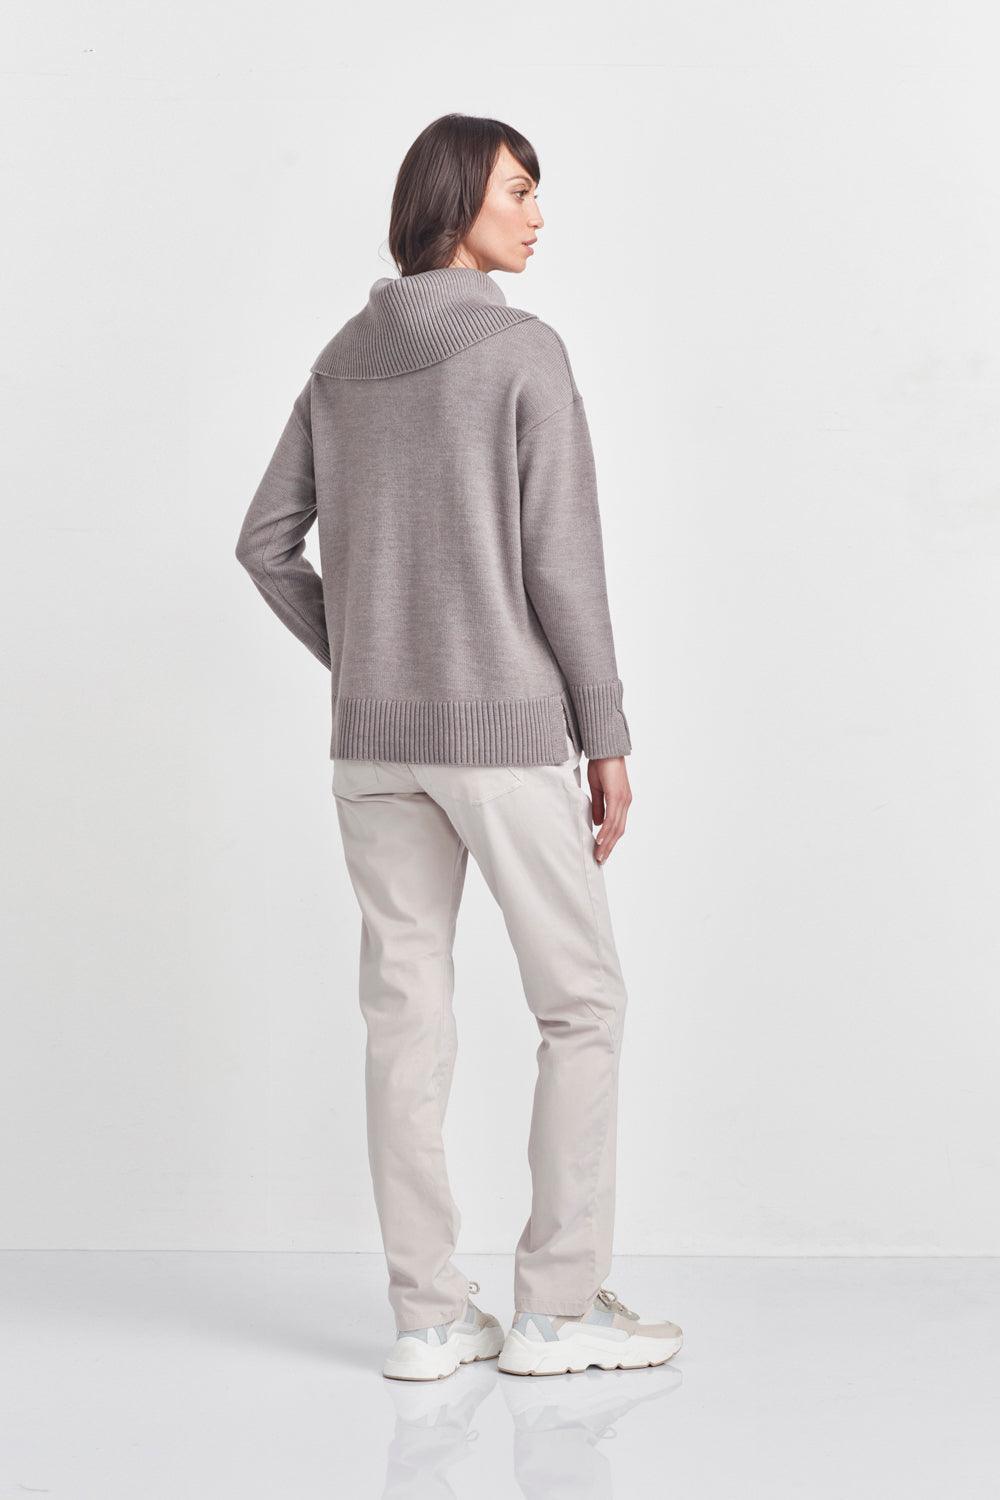 Oasis Sweater - Mushroom - Sweater VERGE